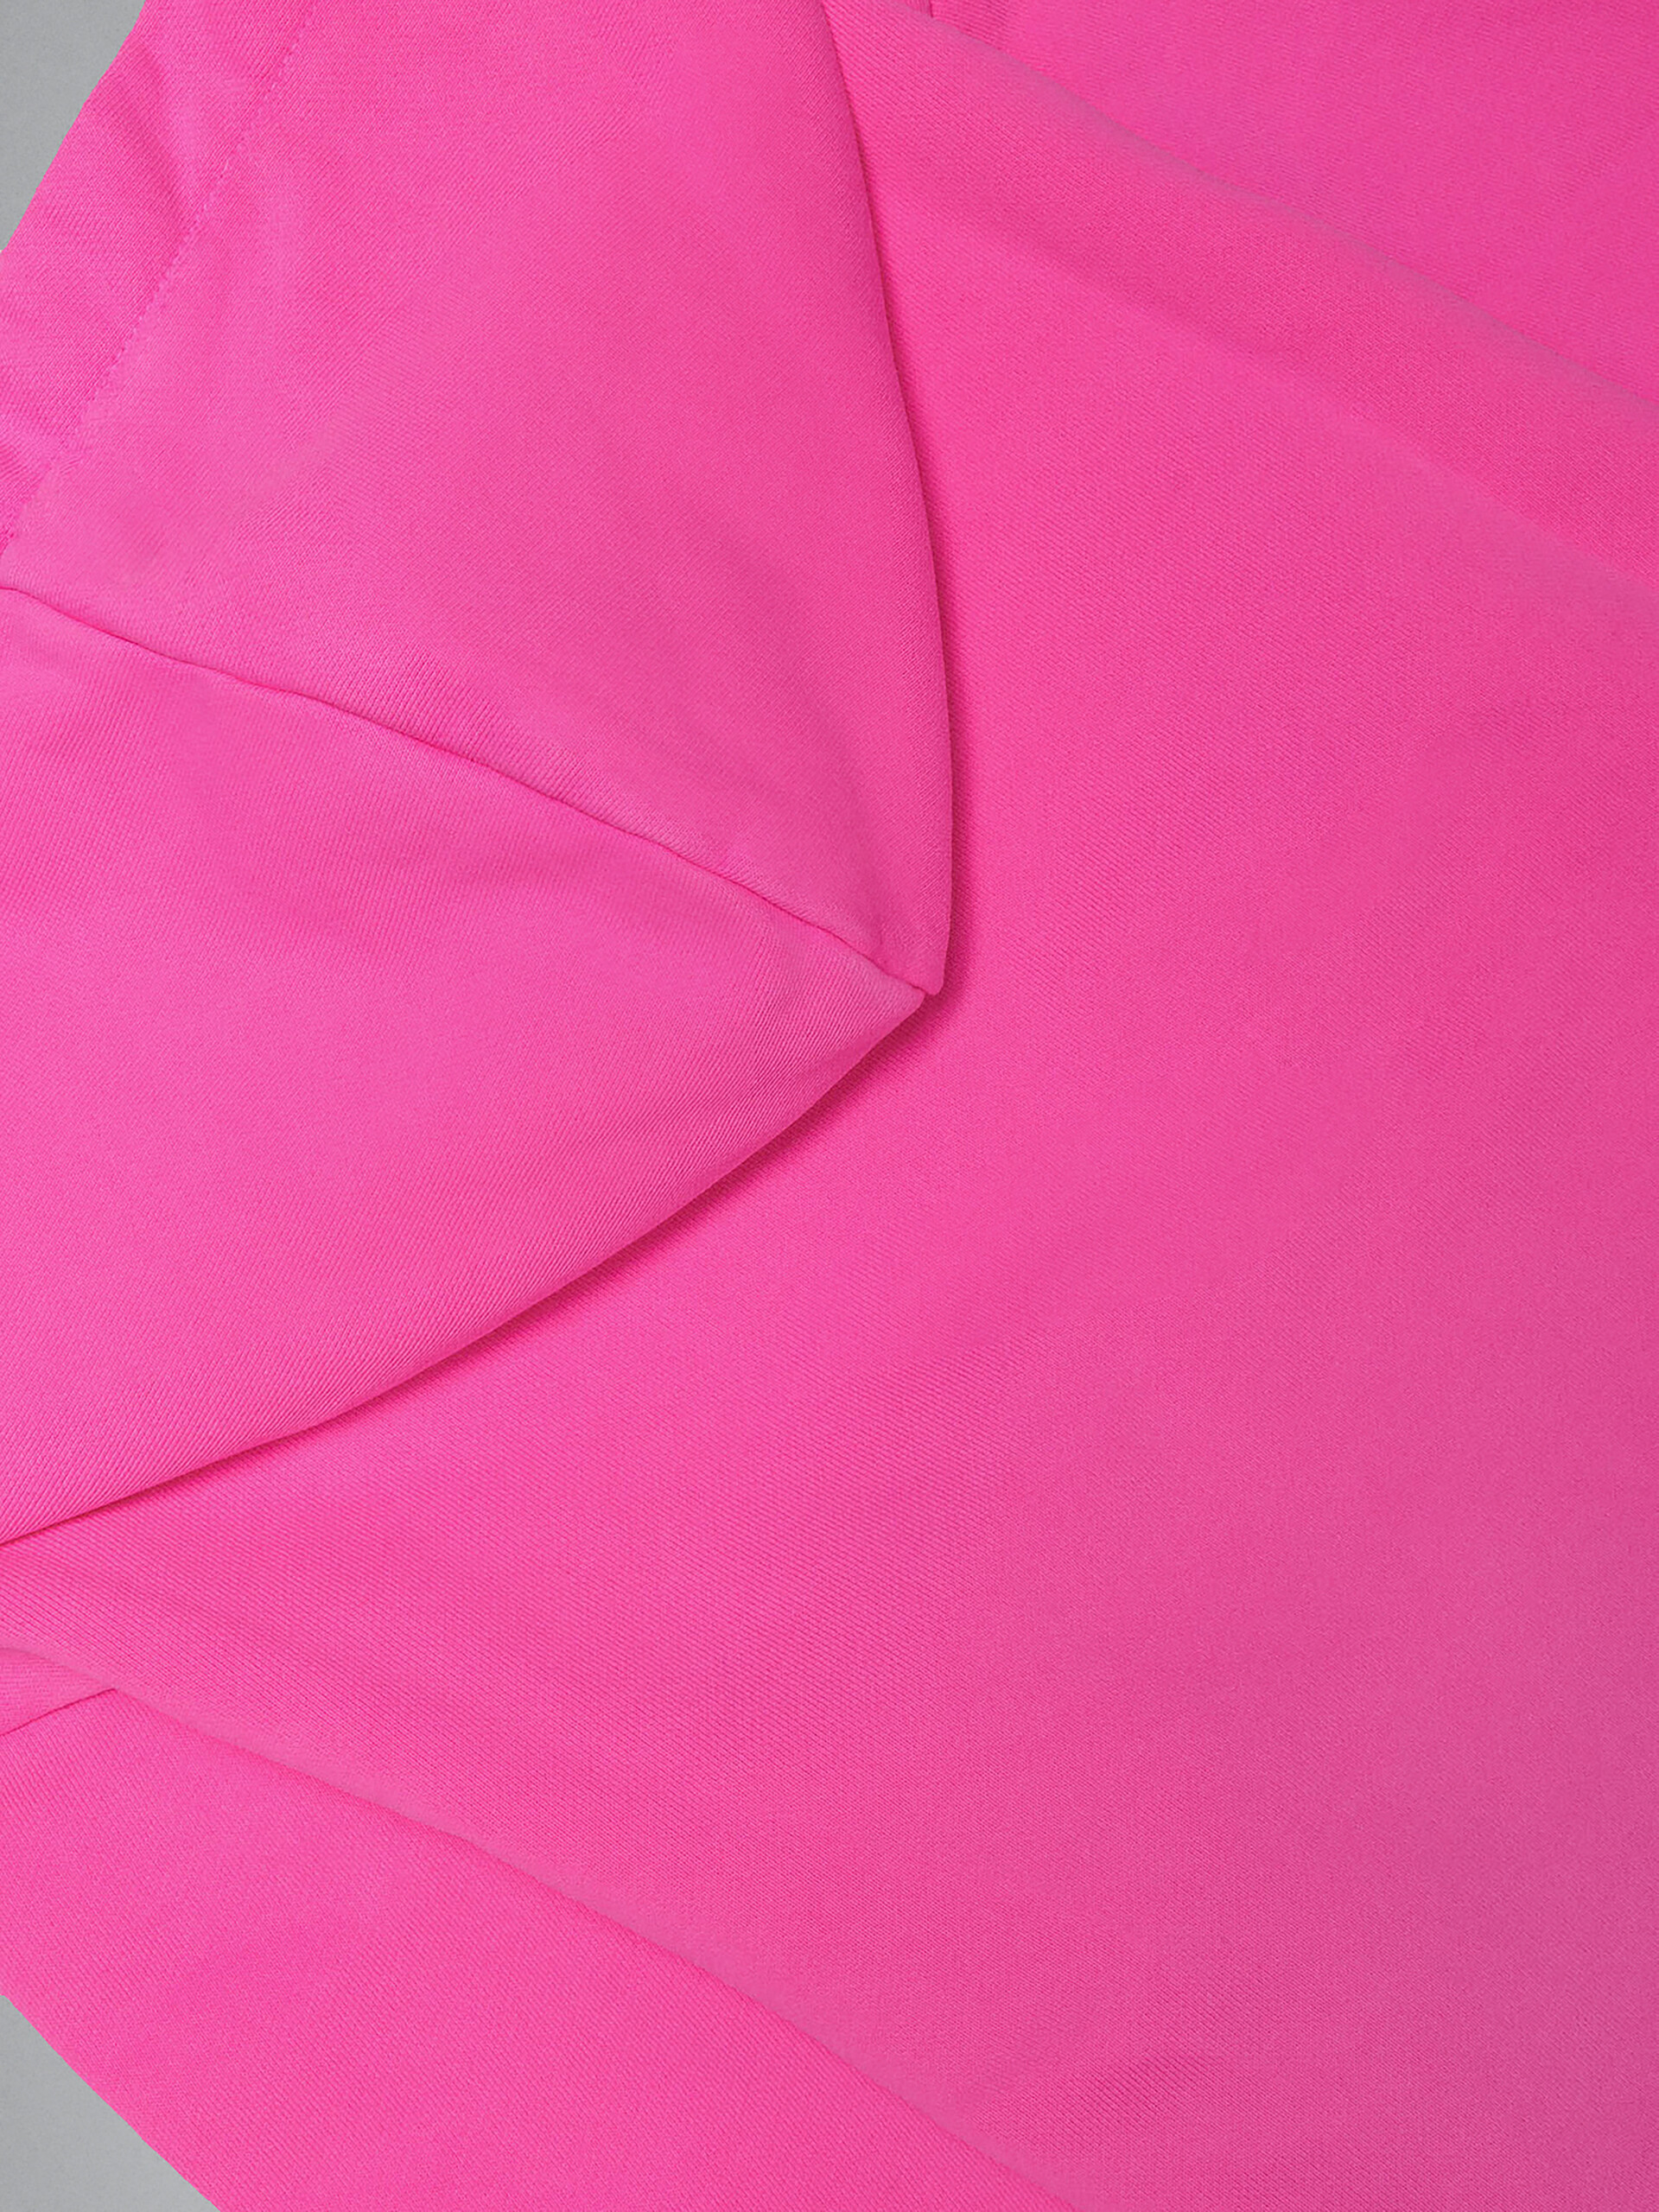 ネオンピンク ロゴ入りコットン製スウェットシャツ フード付き - ニット - Image 4